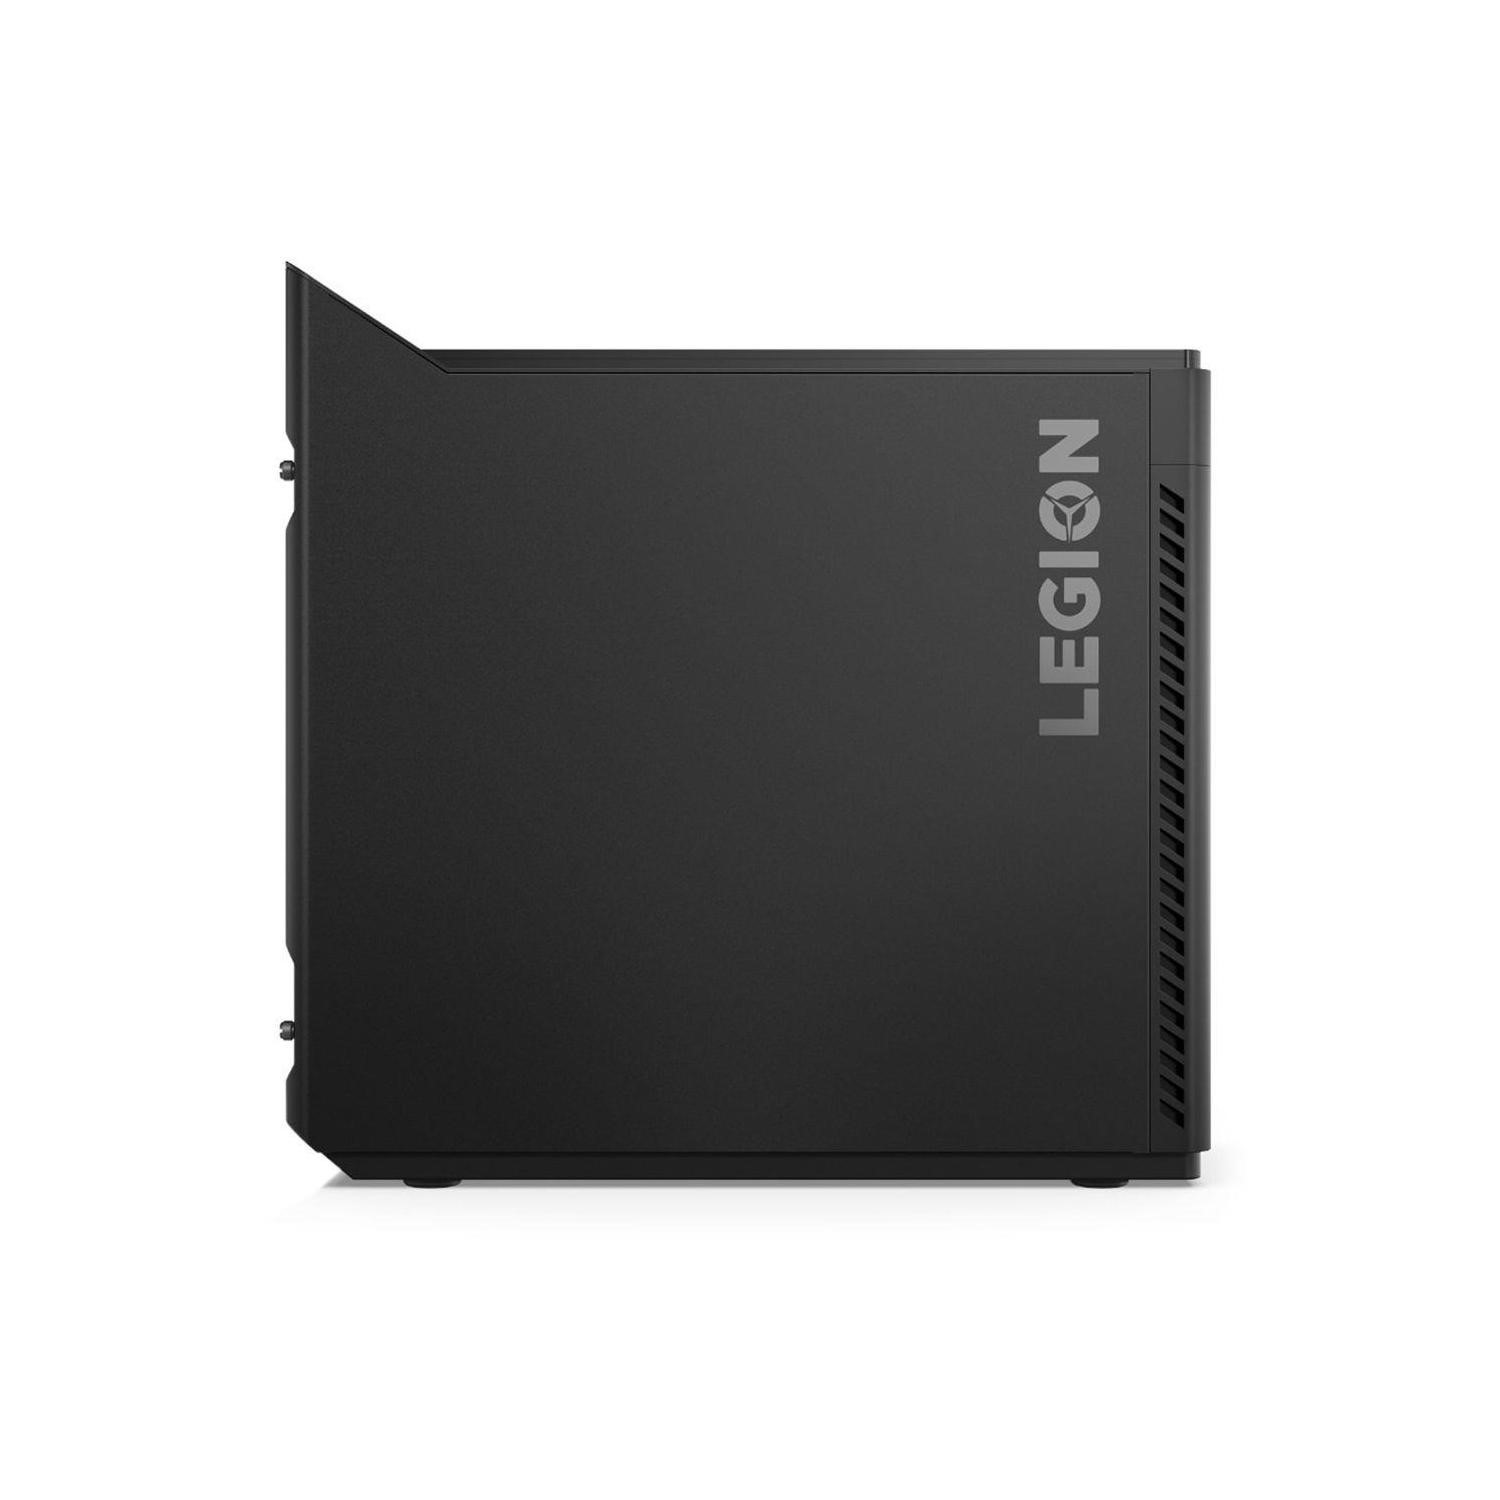 Pc Portable Lenovo Legion Y520 / i7 7è Gén / 8 Go